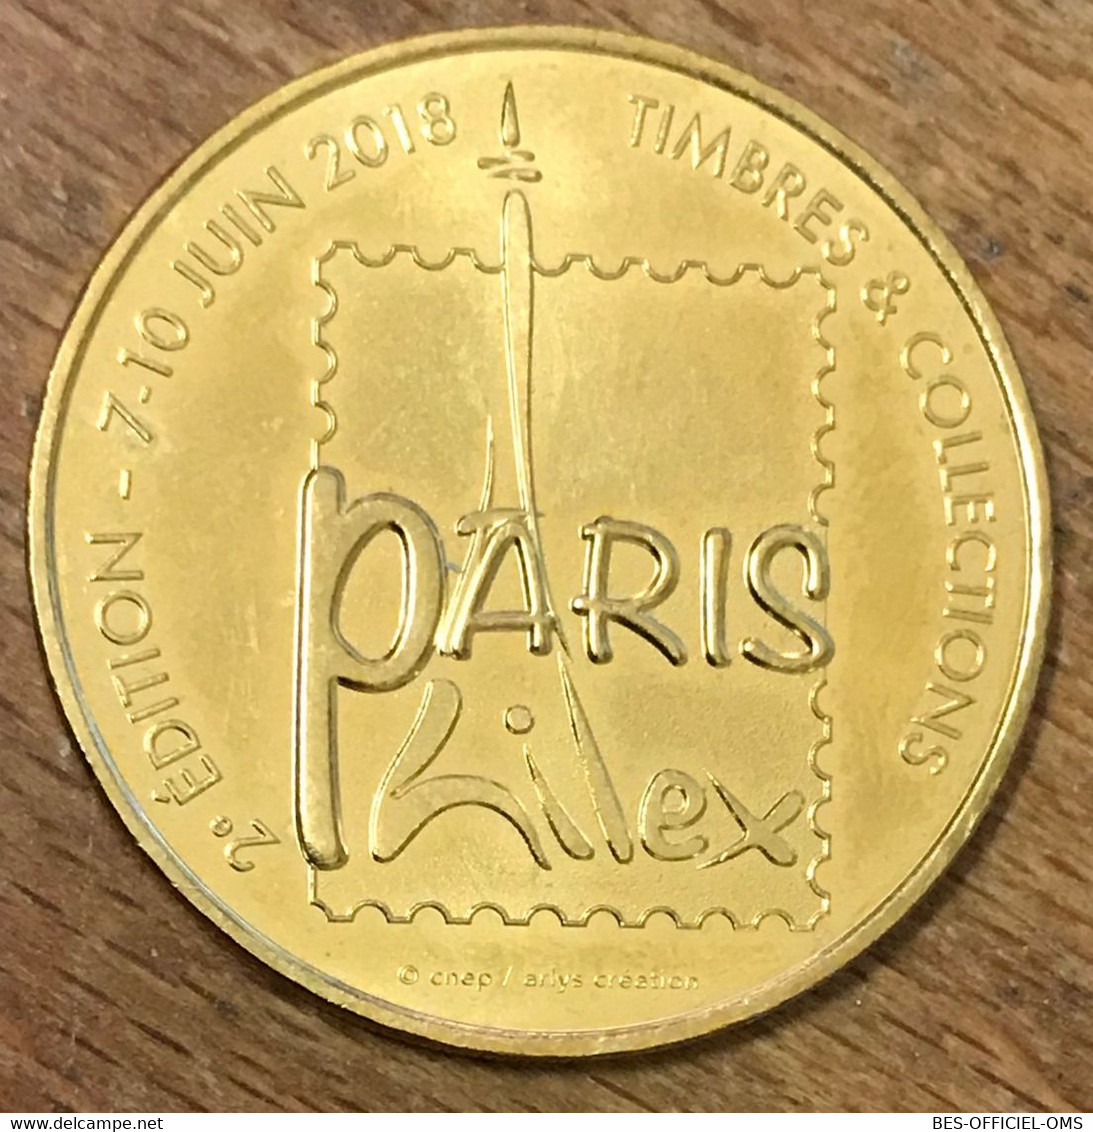 75015 PARIS SALON PHILEX MDP 2018 MÉDAILLE SOUVENIR MONNAIE DE PARIS JETON TOURISTIQUE MEDALS COINS TOKENS - 2018